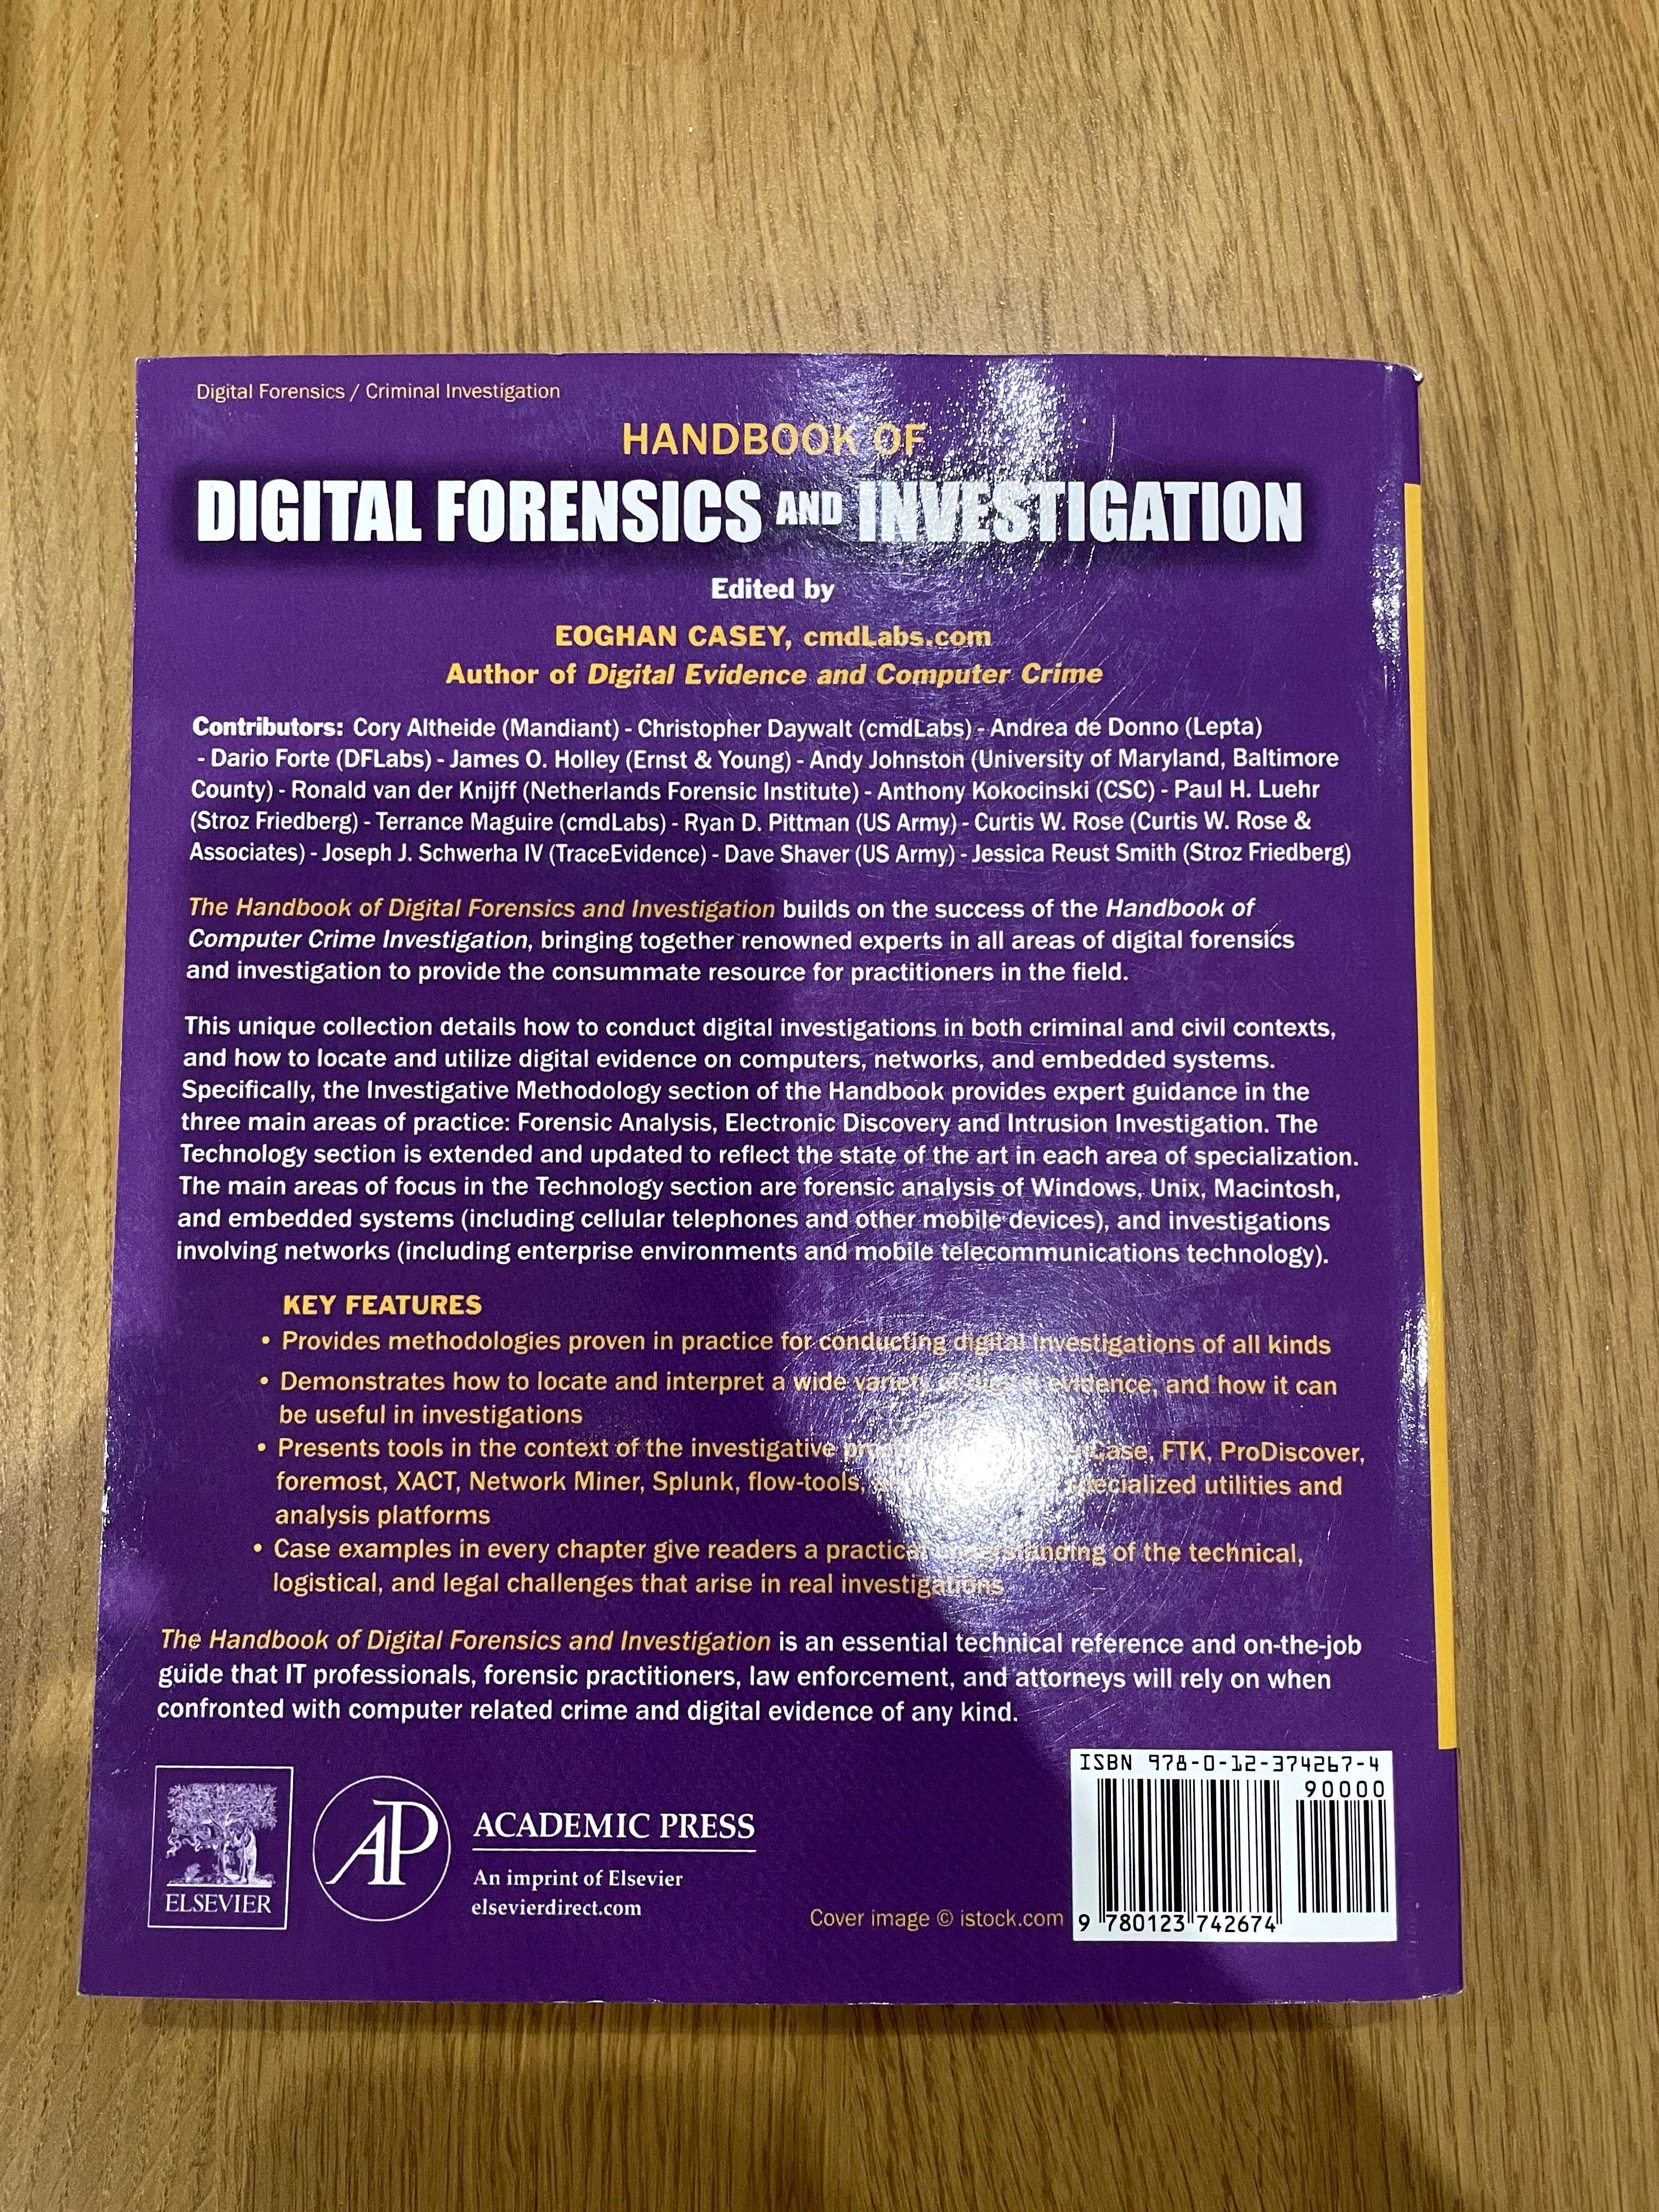 Livros sobre Forense Digital e Crime Computacional - Novos